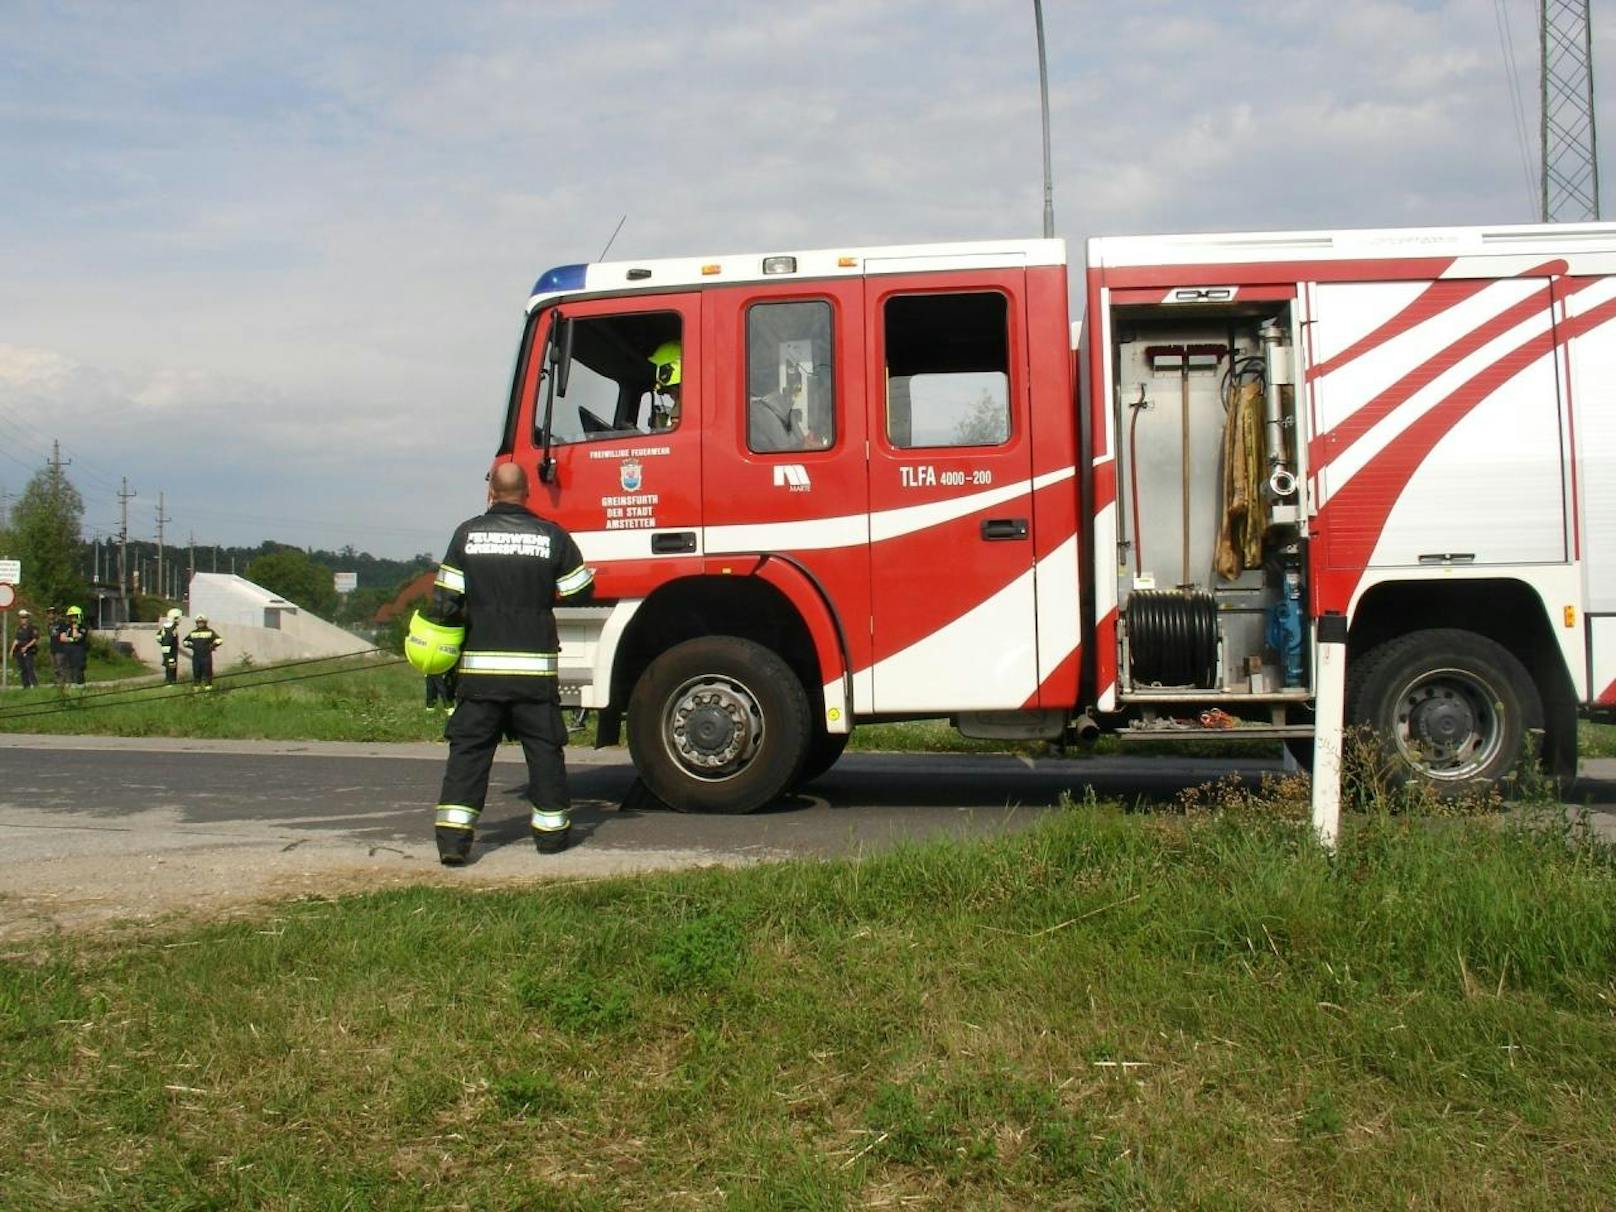 Lkw blieb in Unterführung stecken: Einsatz für die Feuerwehr.